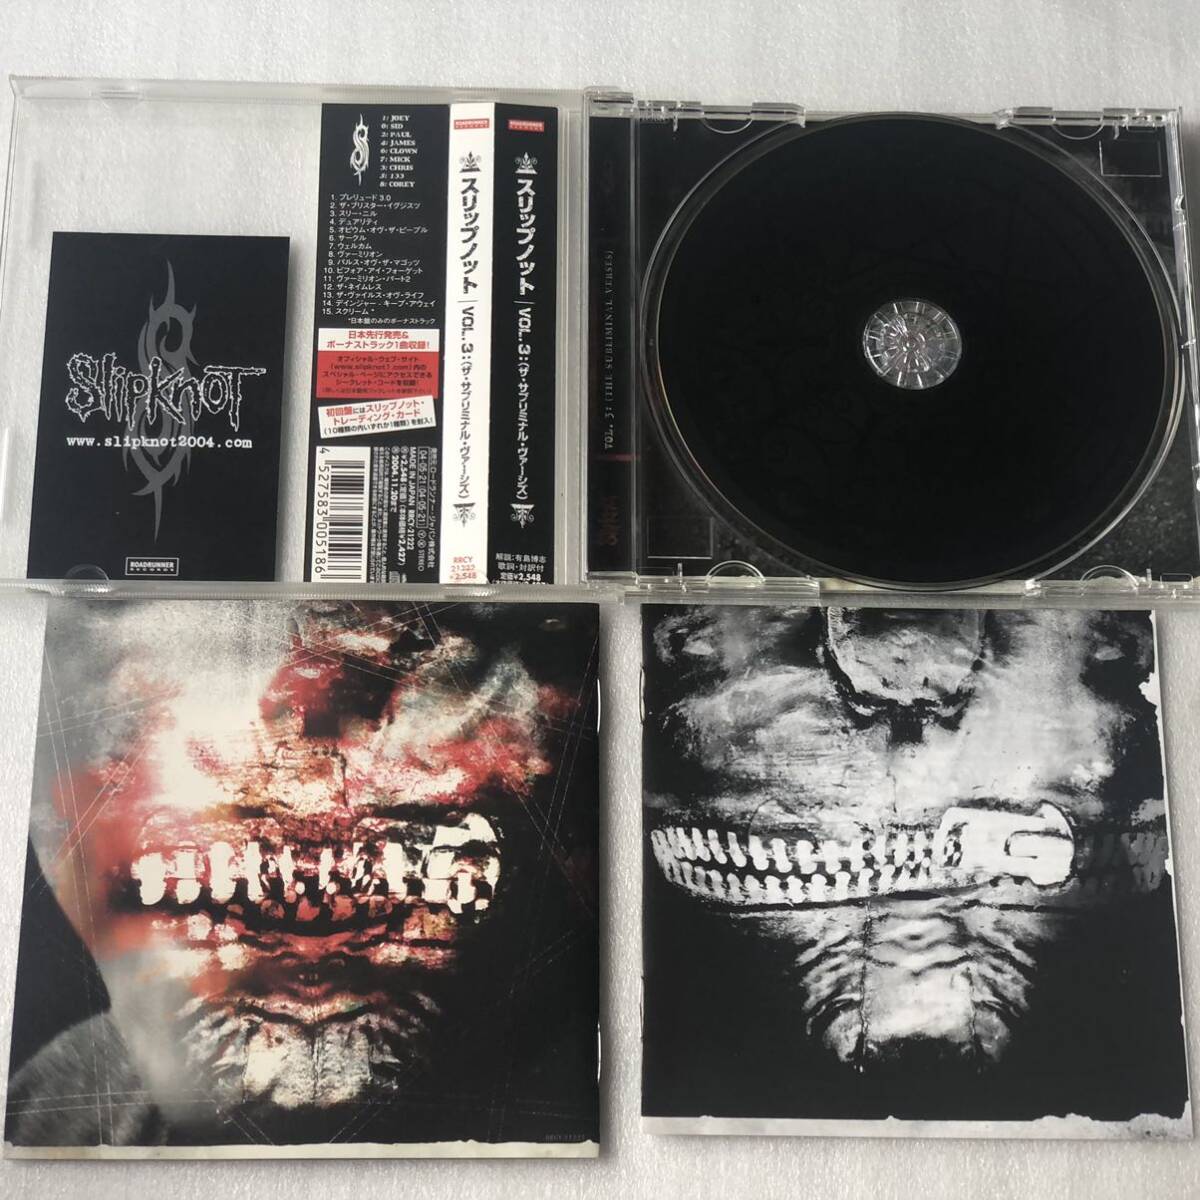 中古CD Slipknot スリップノット/Vol. 3: (The Subliminal Verses) (2004年)_画像3